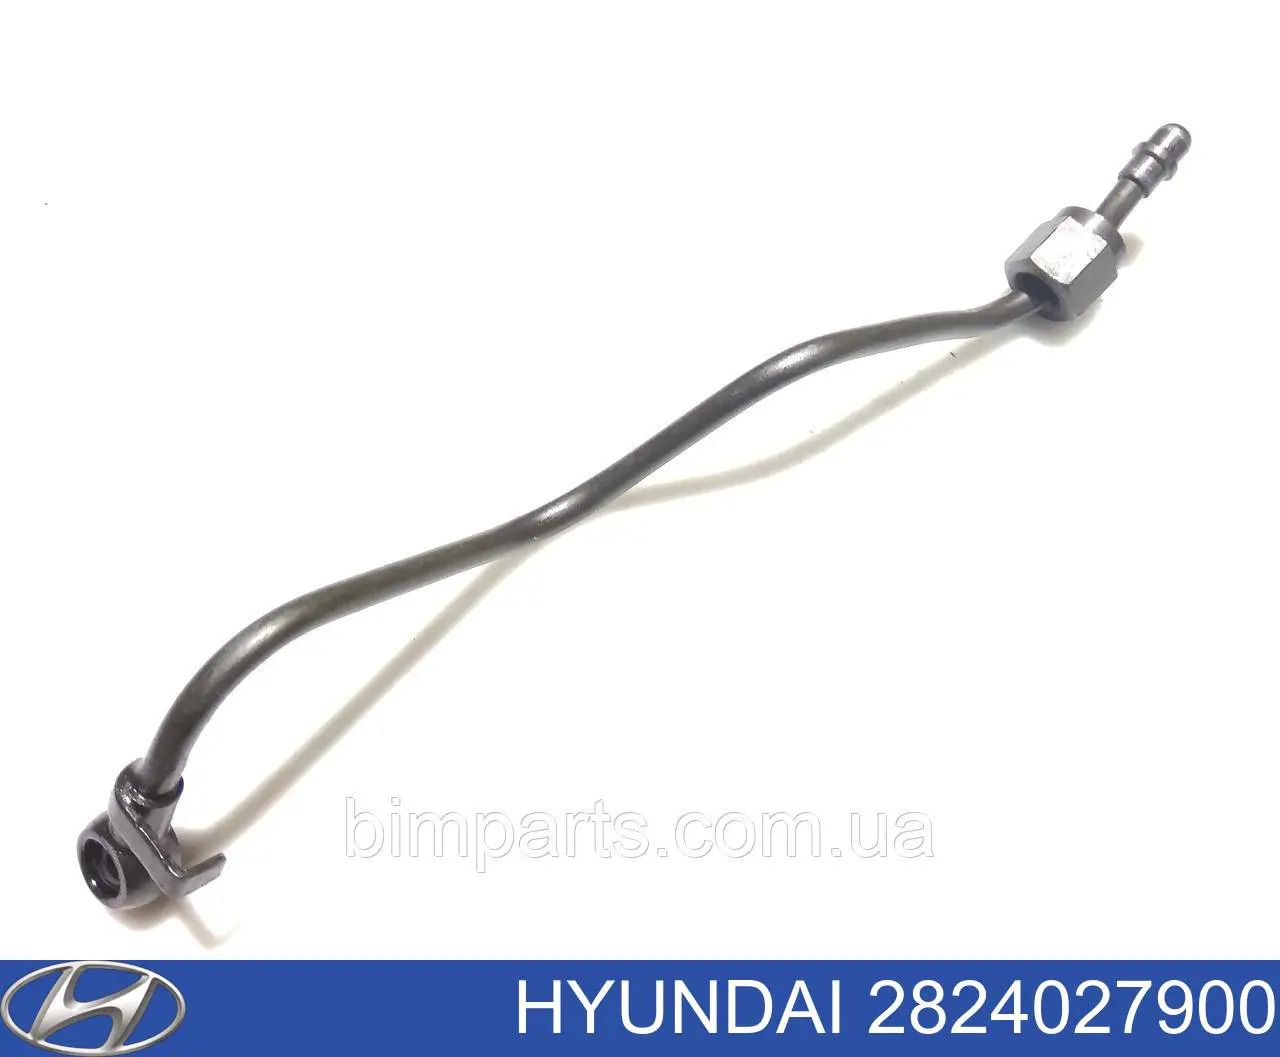 2824027900 Hyundai/Kia tubo (mangueira de fornecimento de óleo de turbina)